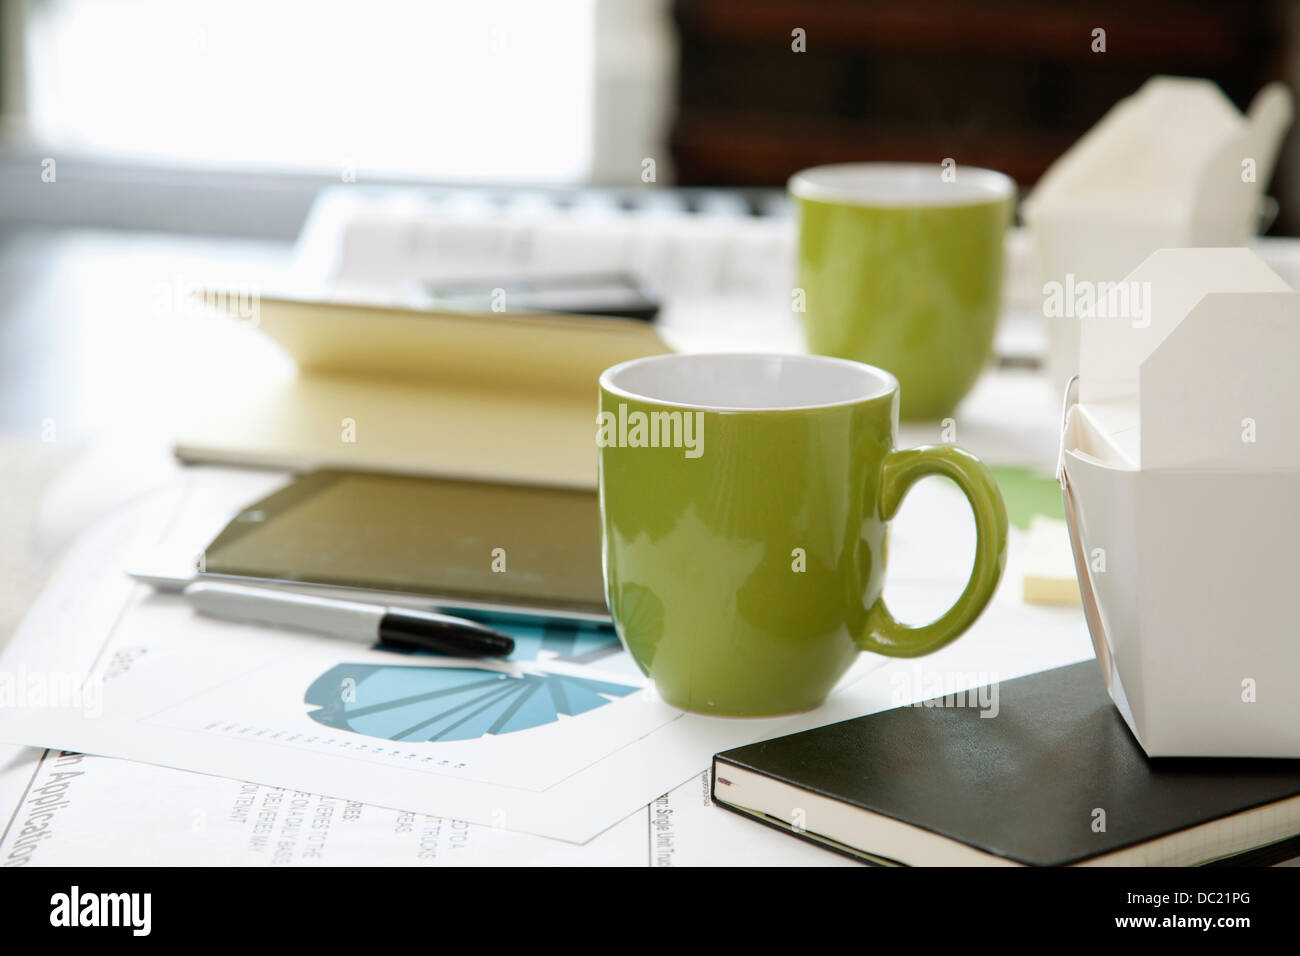 La documentazione di grafici, diagrammi e tazze sul tavolino da caffè Foto Stock